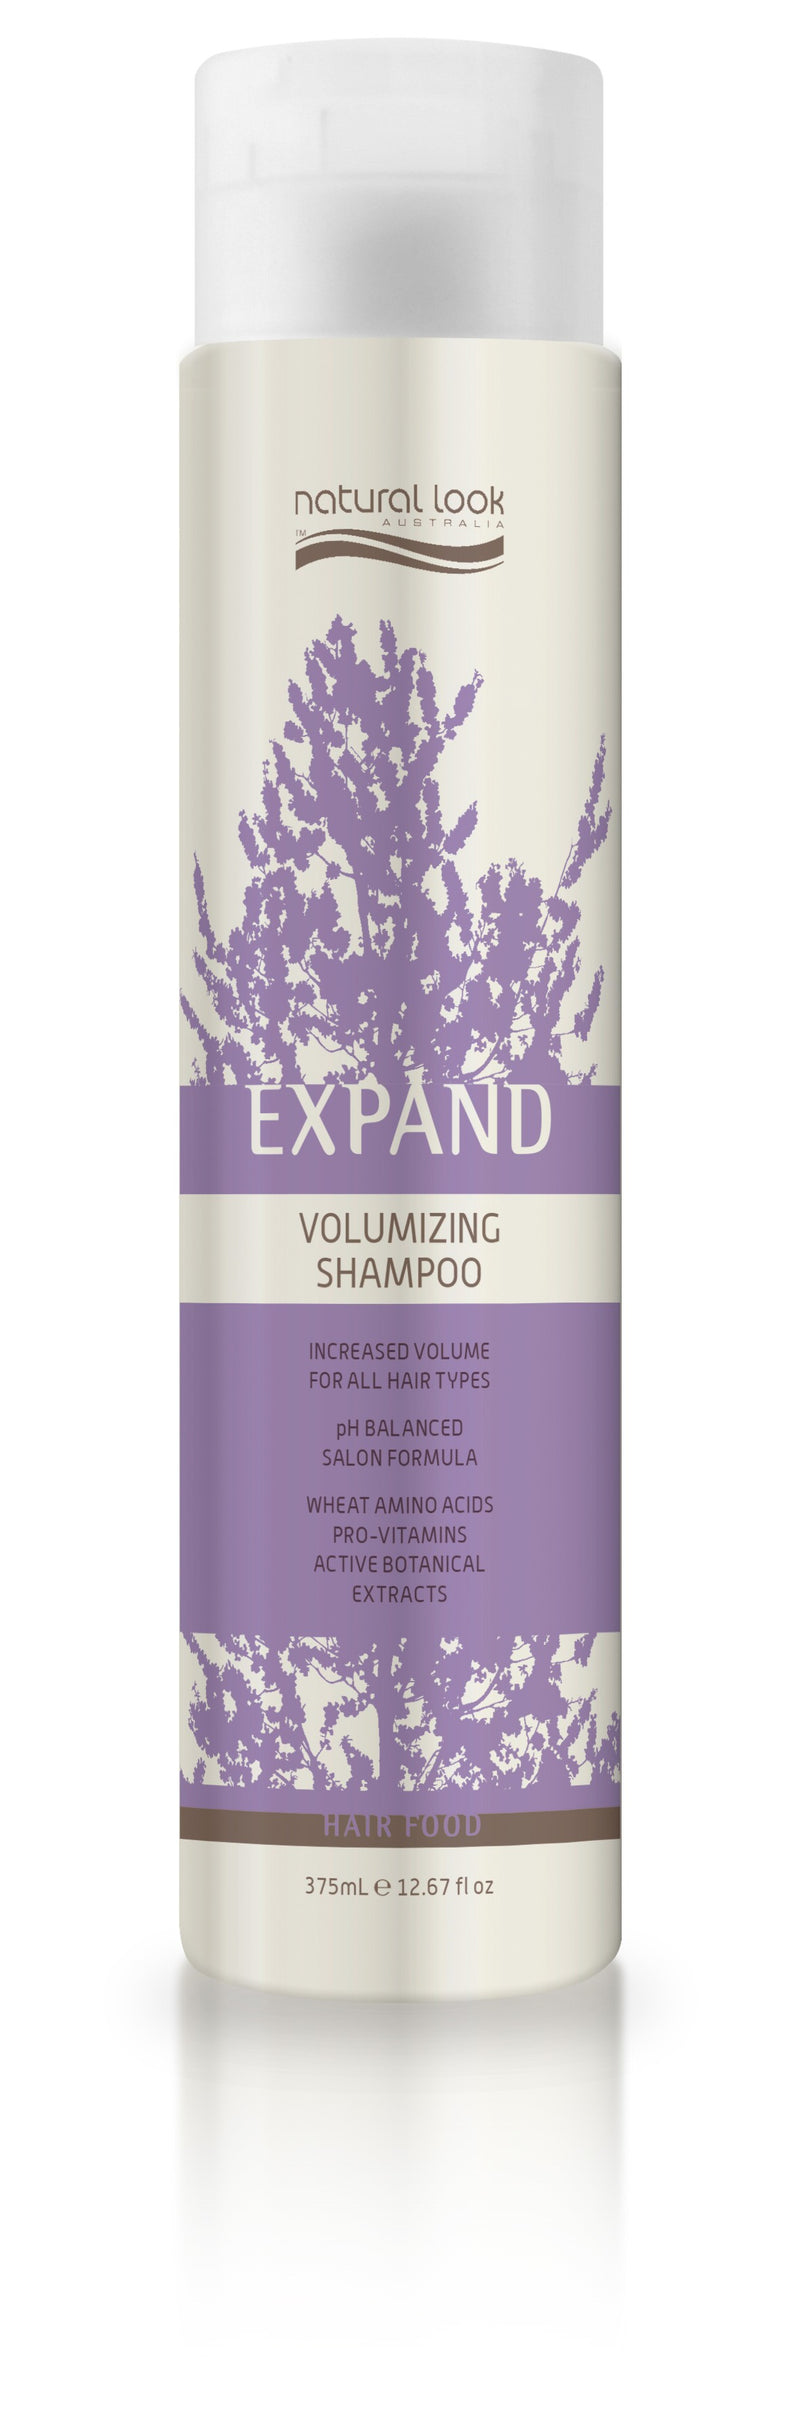 Natural Look Expand Volumizing Shampoo 375ml